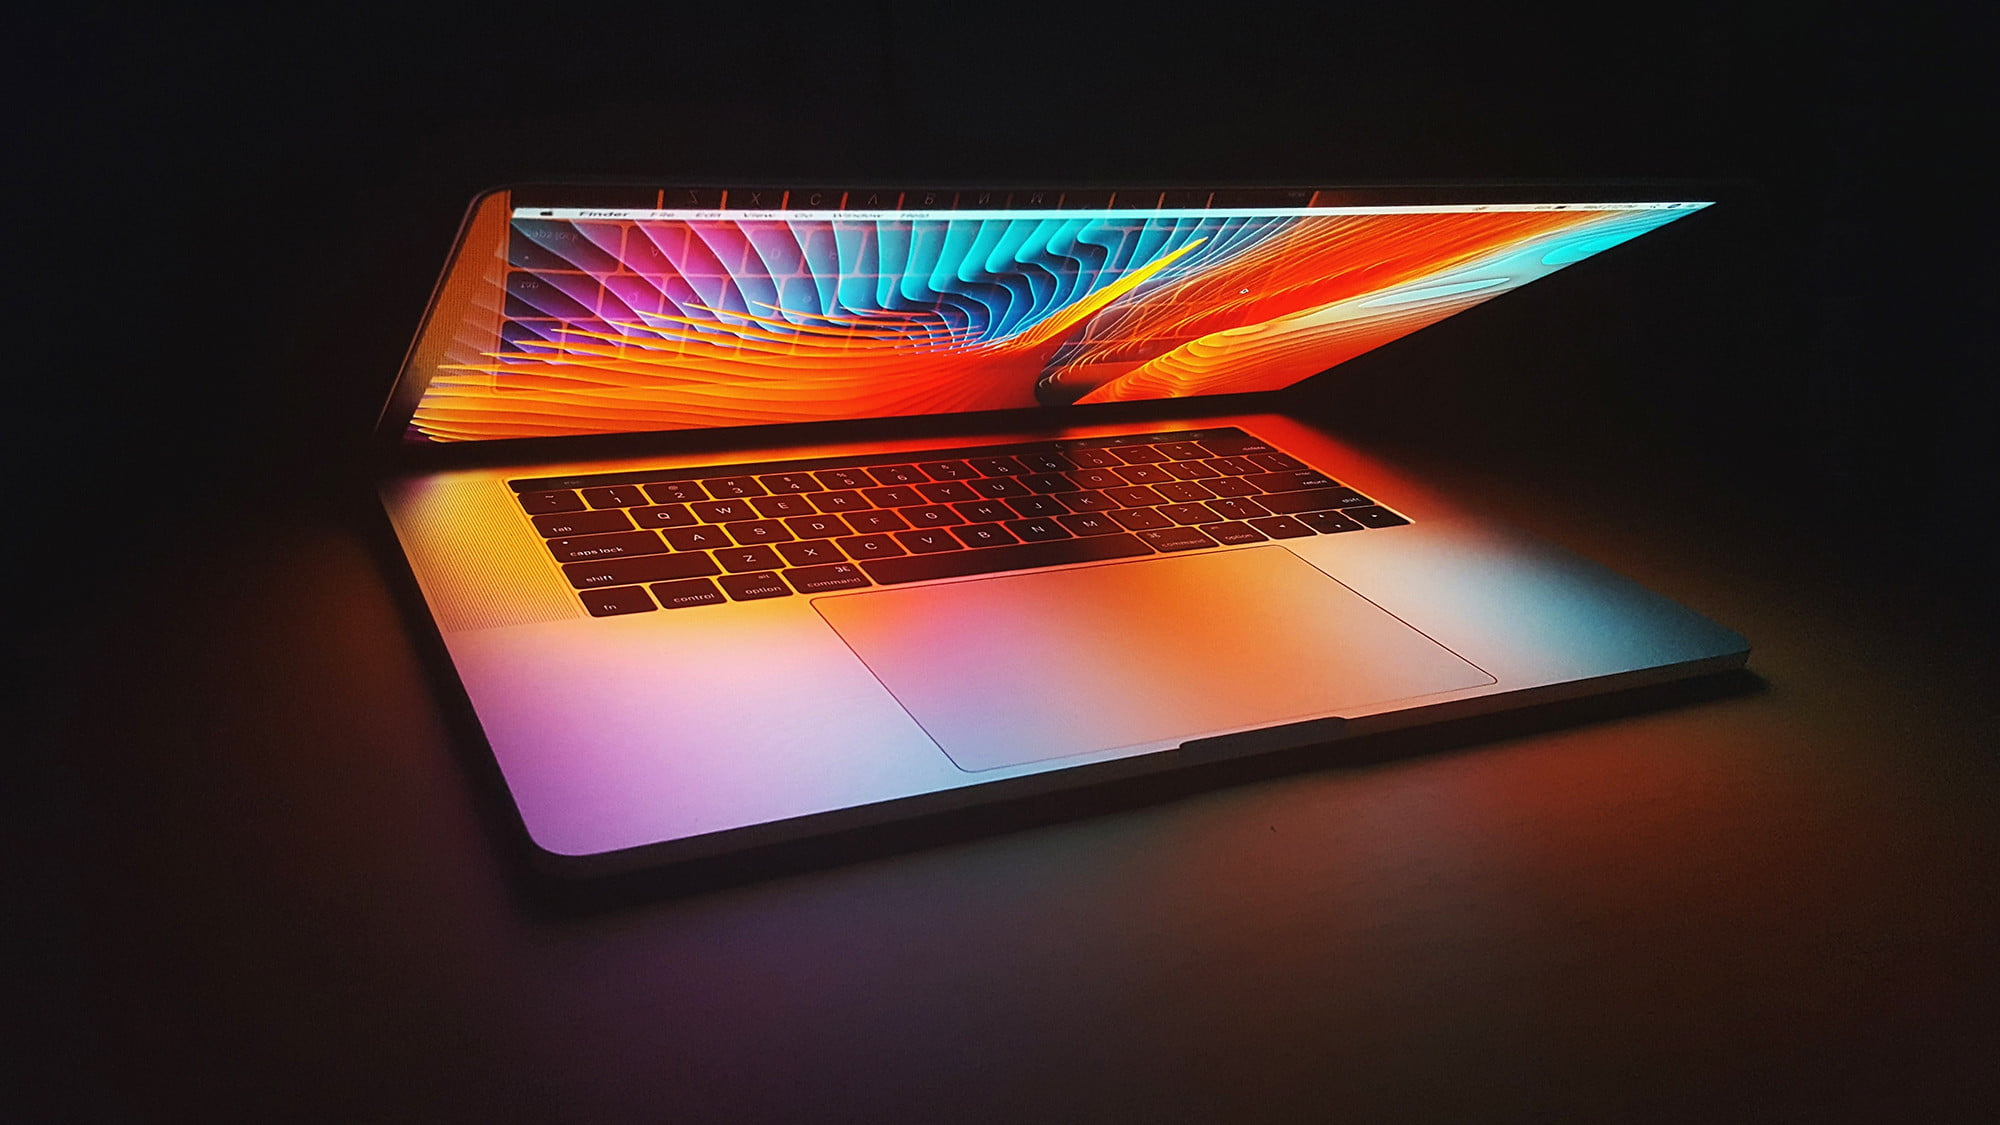 Sự kiện ra mắt sản phẩm mới của Apple đêm nay sẽ có những gì: MacBook Pro thiết kế mới, Mac mini, AirPods 3...? - Ảnh 2.